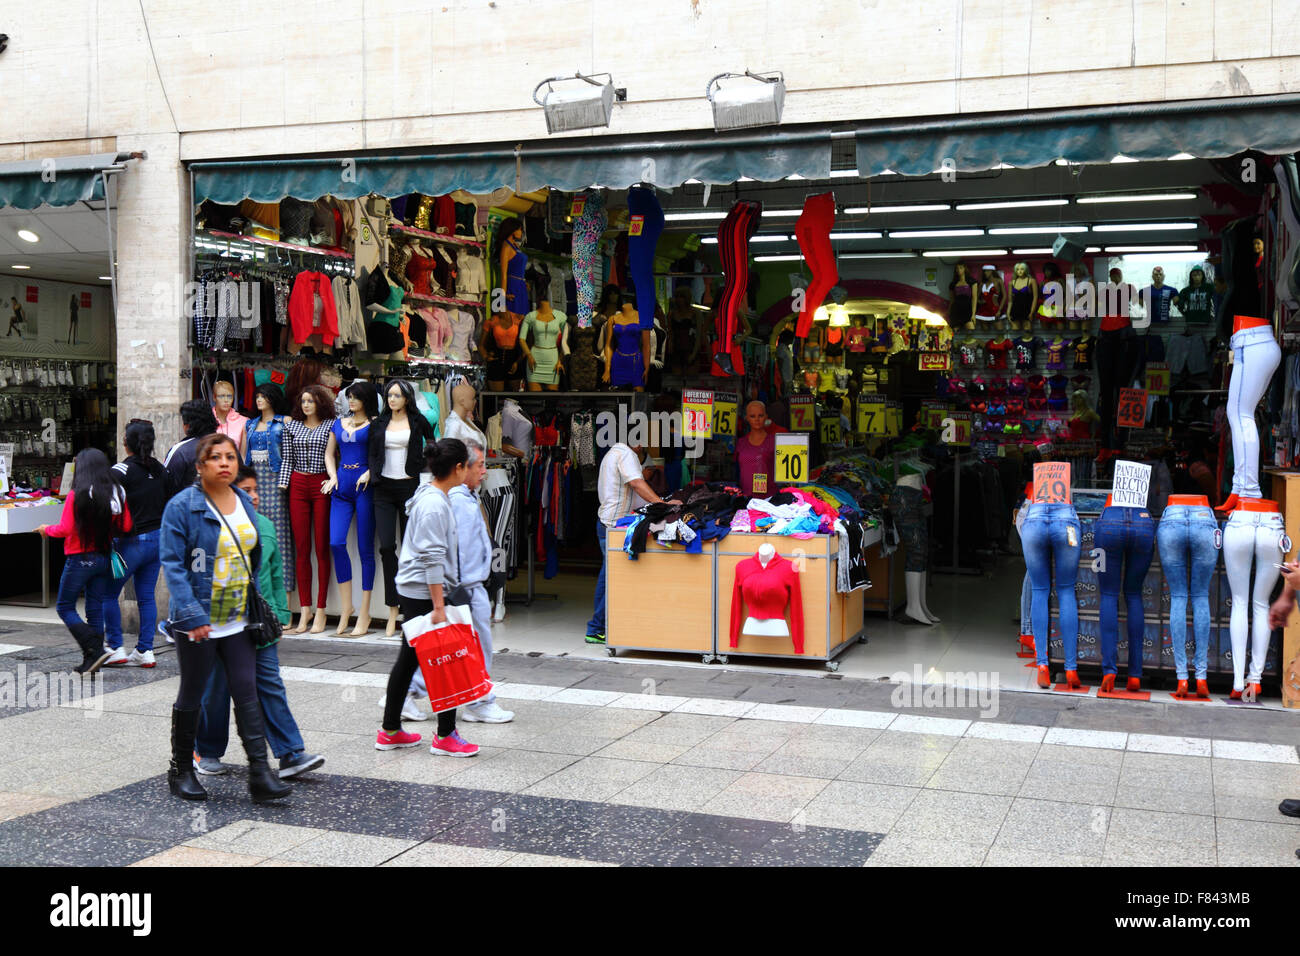 Magasin qui vend des vêtements importés bon marché dans Jiron Union européenne, centre de Lima, Pérou Banque D'Images